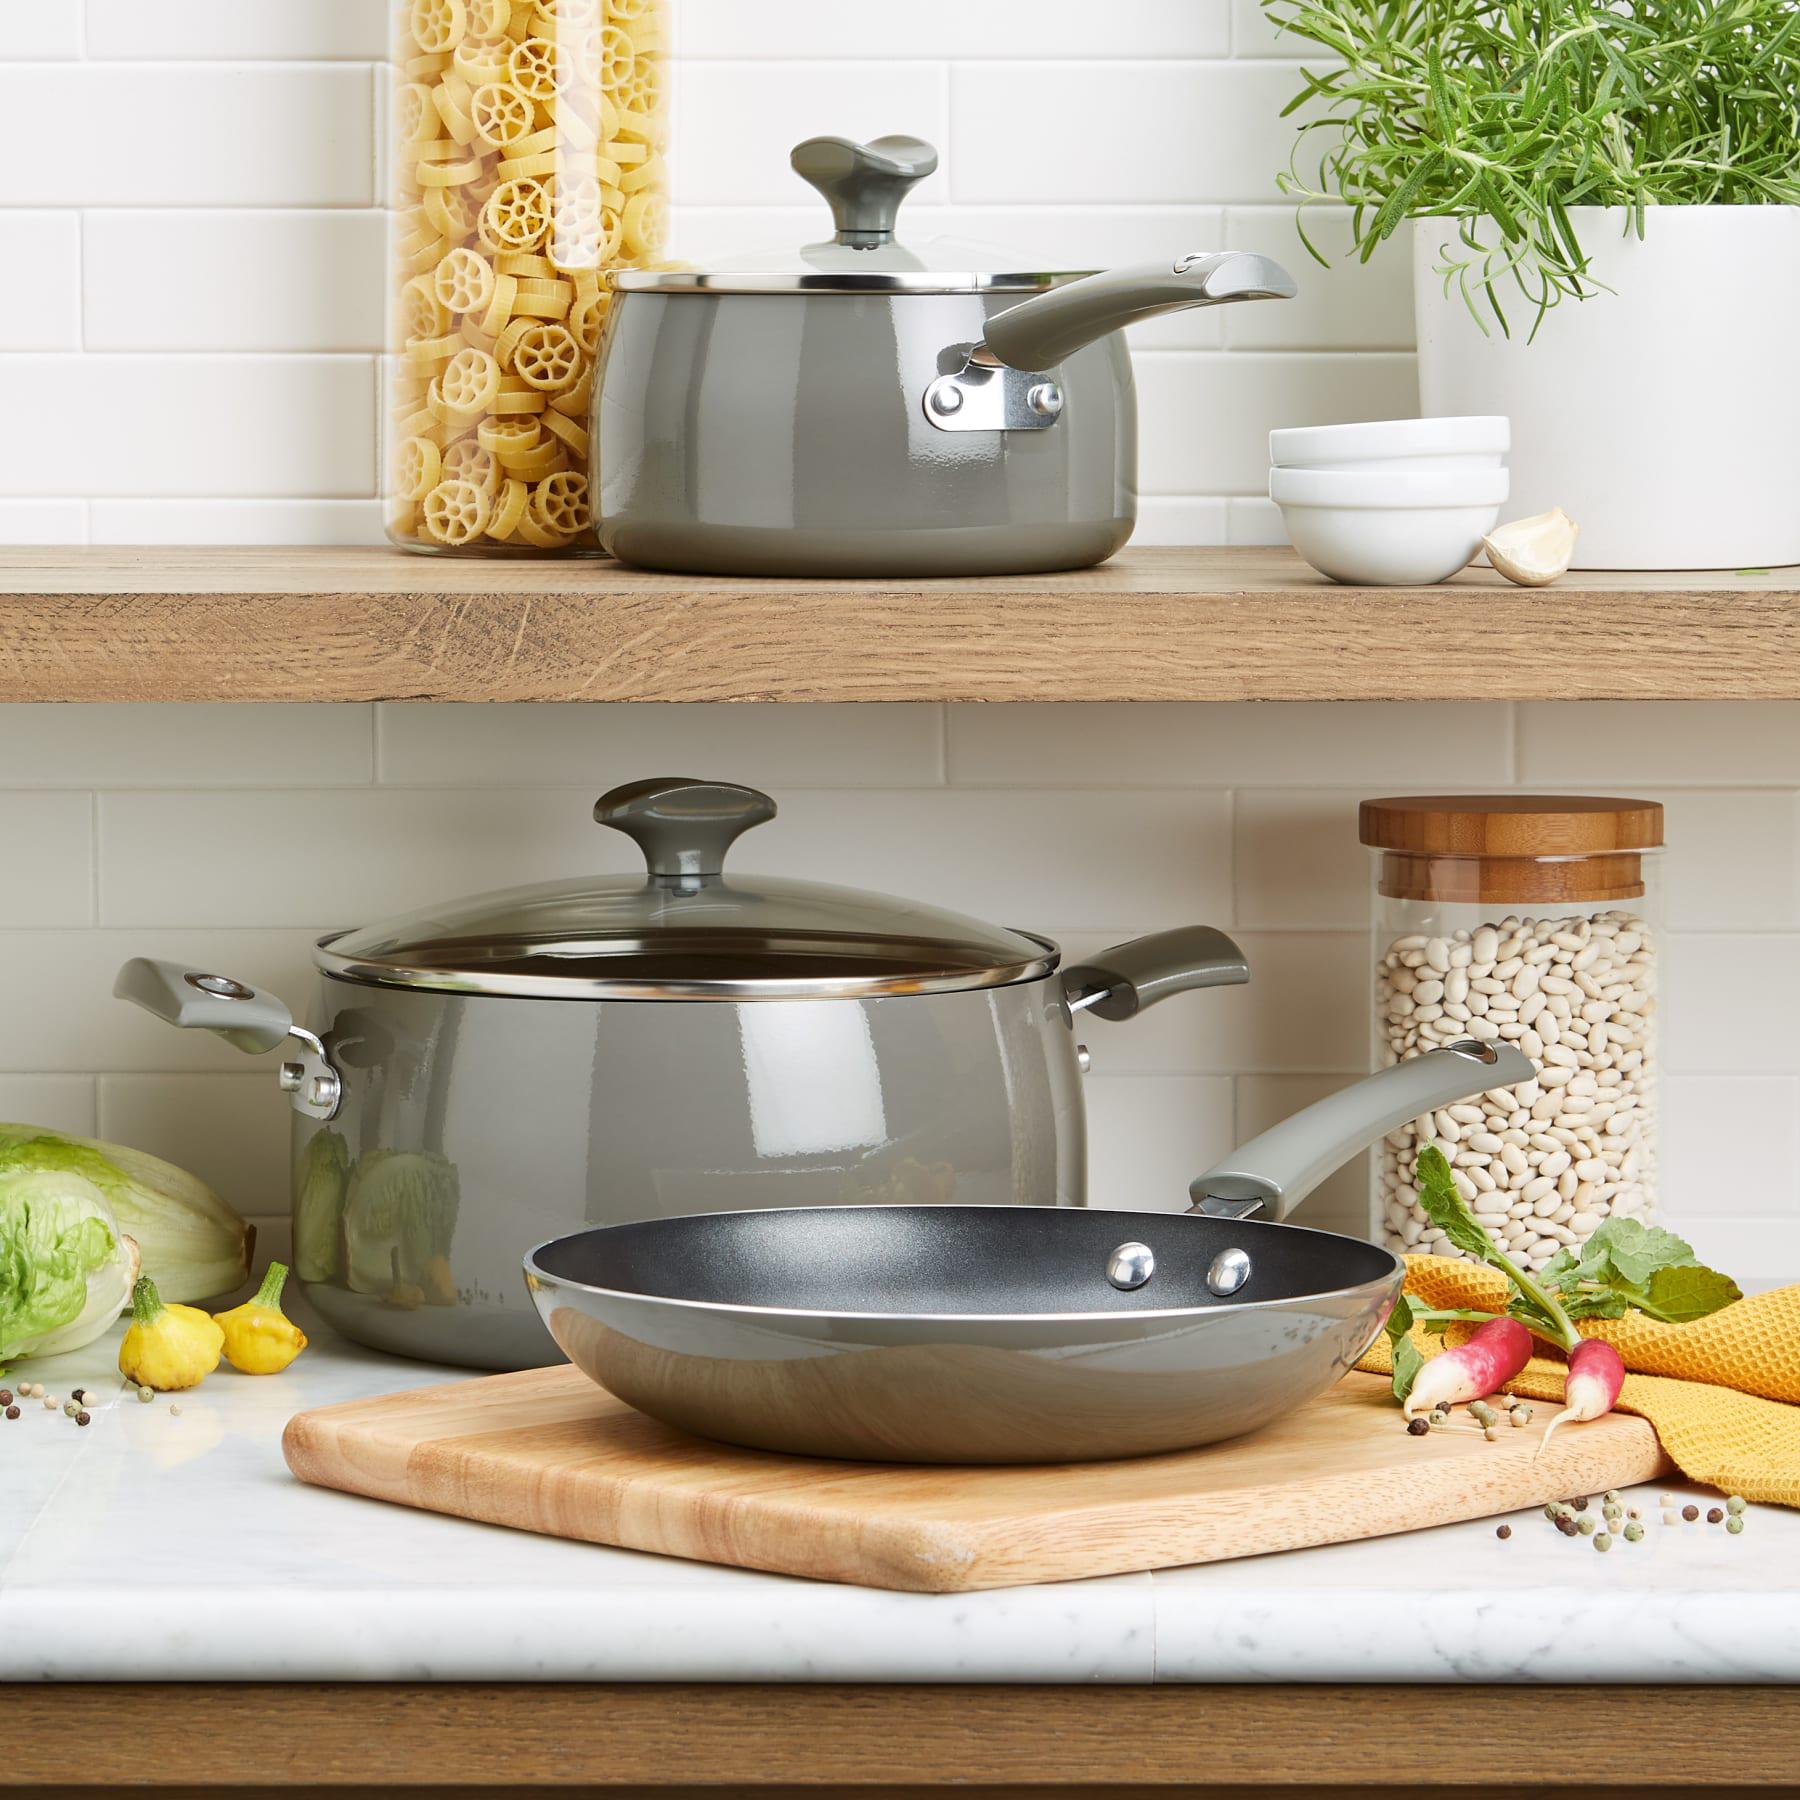  Hard Porcelain Enamel Nonstick Cookware Pots and Pans Set,  12-Piece, Cooking Pots Set,Cutlery (Color : 5): Home & Kitchen